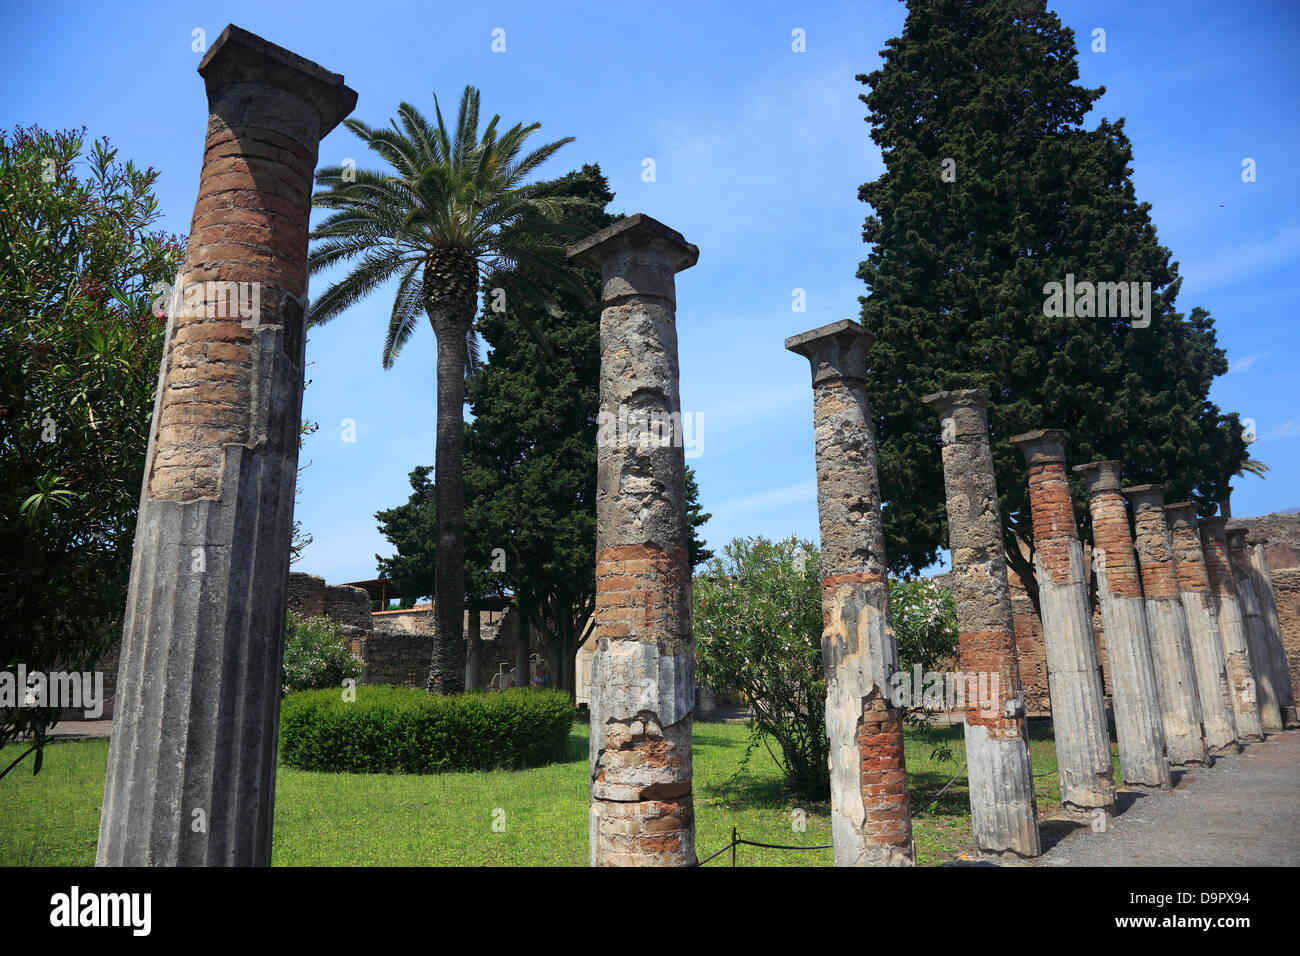 Row of columns on the Via di Nola, Pompeii, Campania, Italy Stock Photo